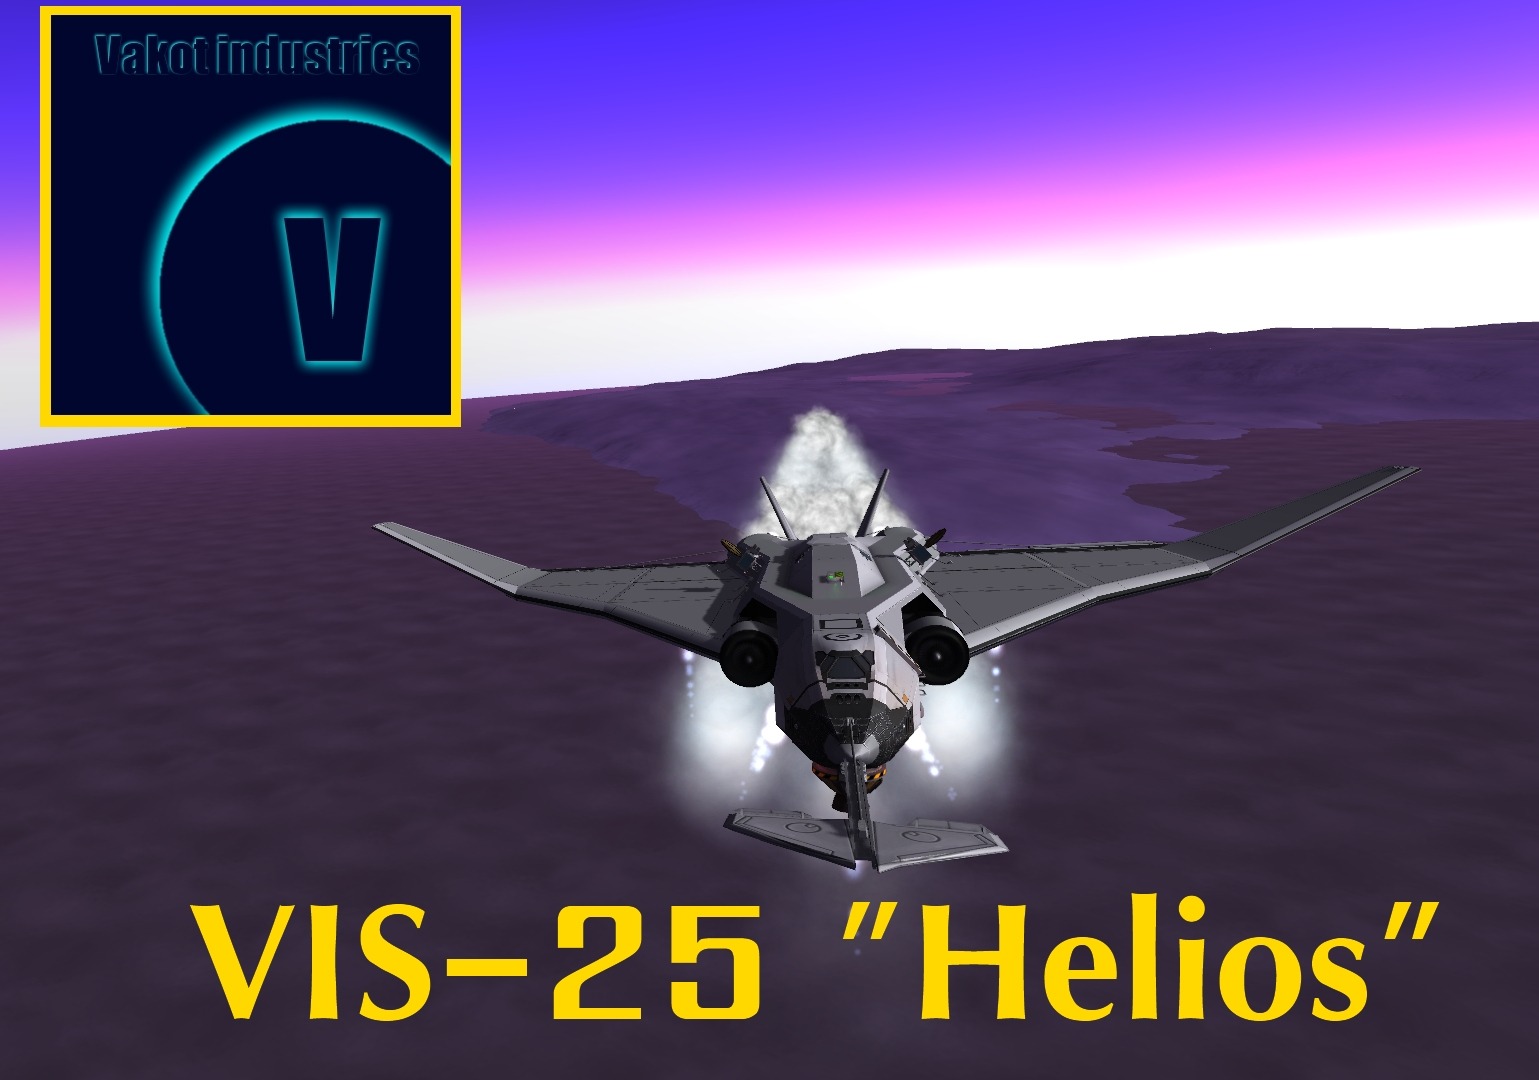 VIS-25 "Helios"